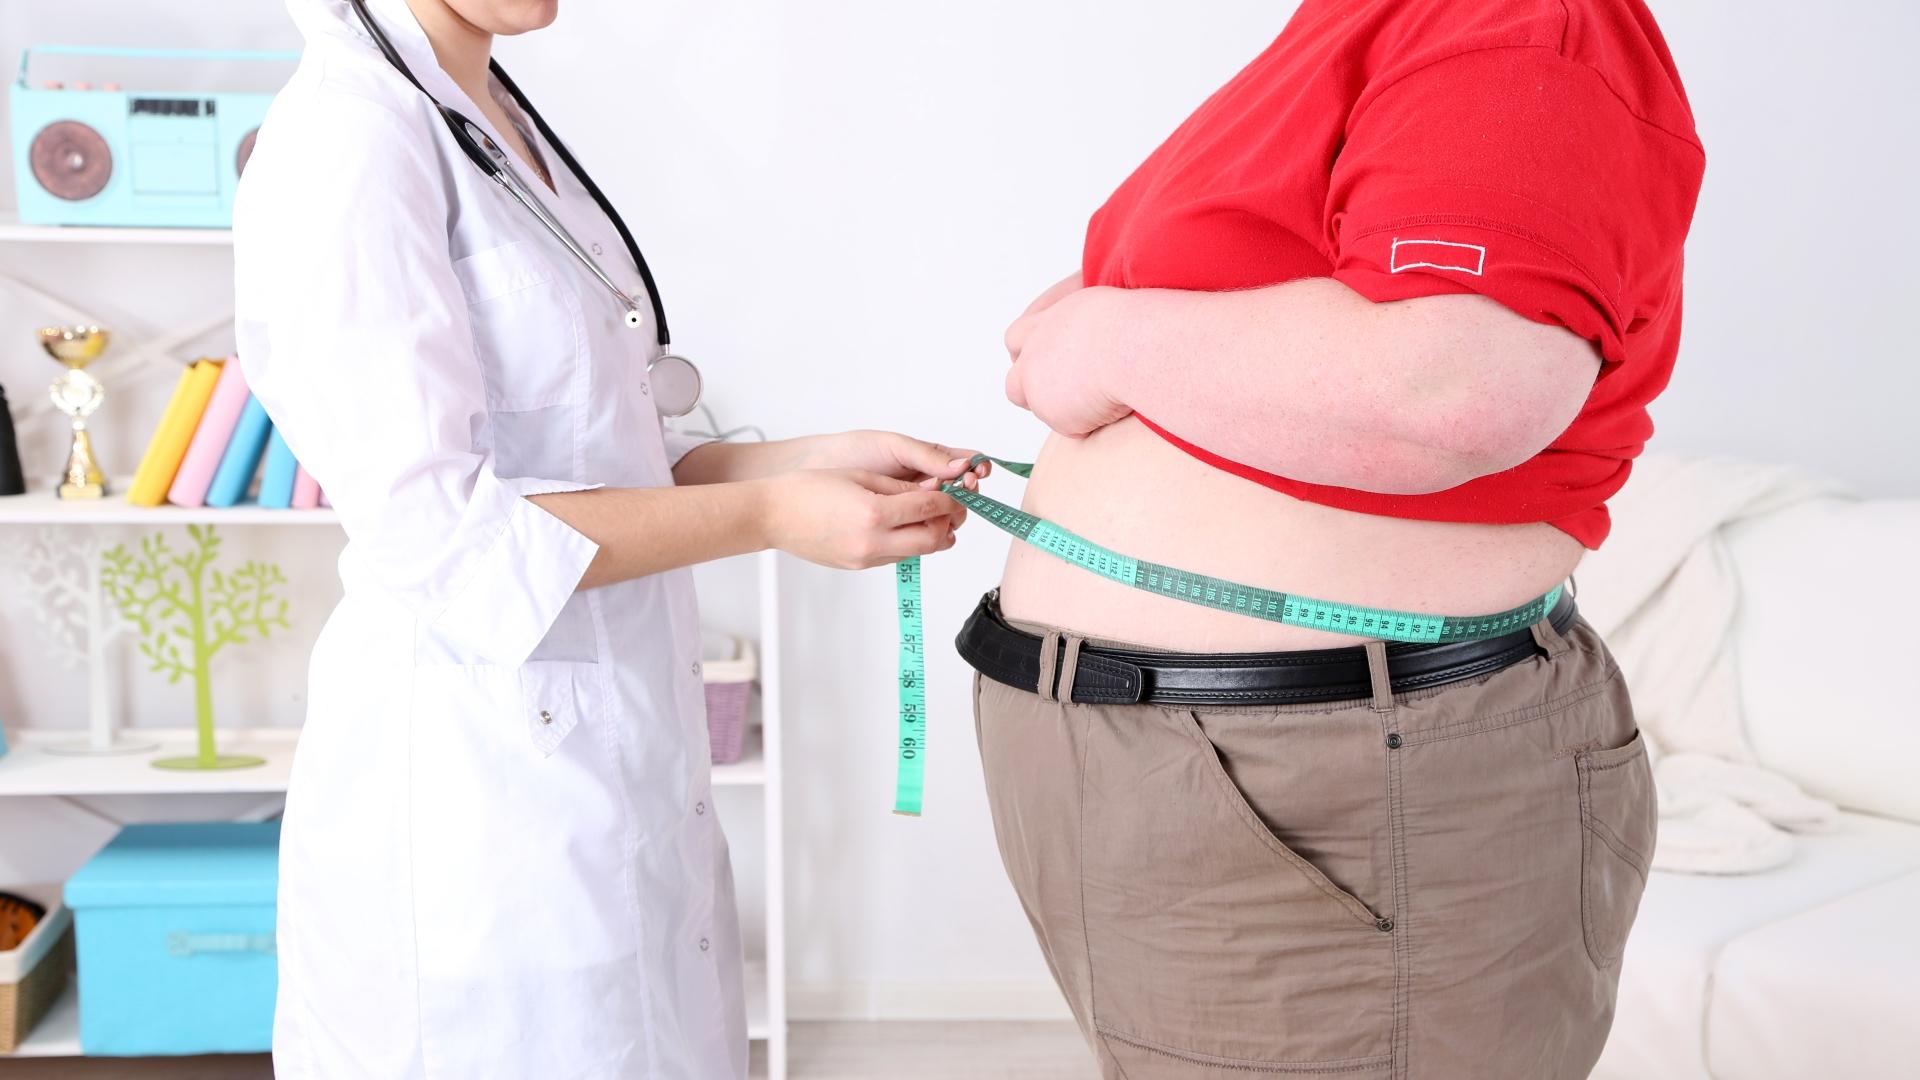 Лишний вес может помочь в борьбе с некоторыми видами рака